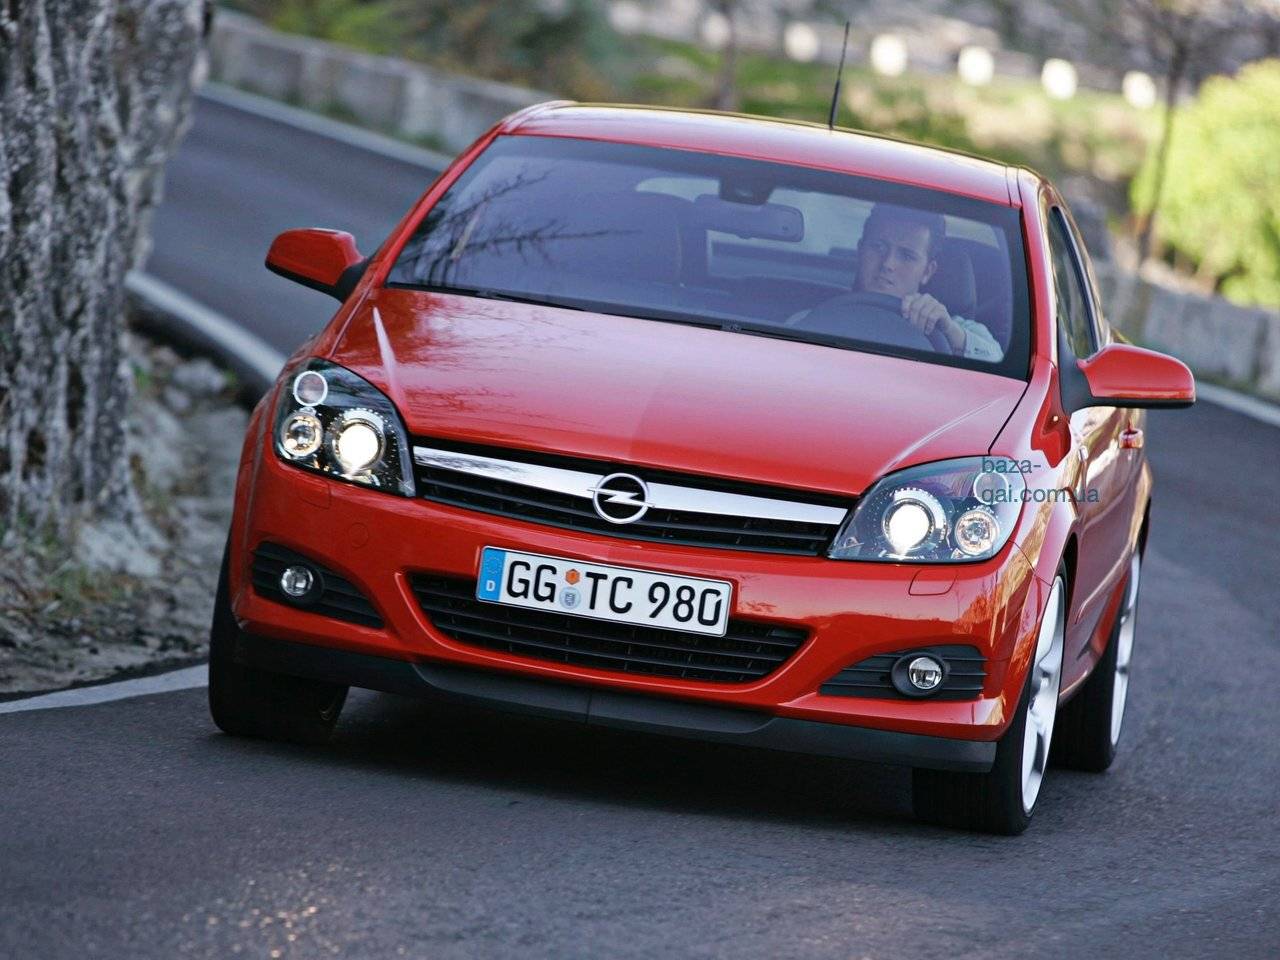 Что взять за 400 тысяч: Opel Astra или Mazda 3